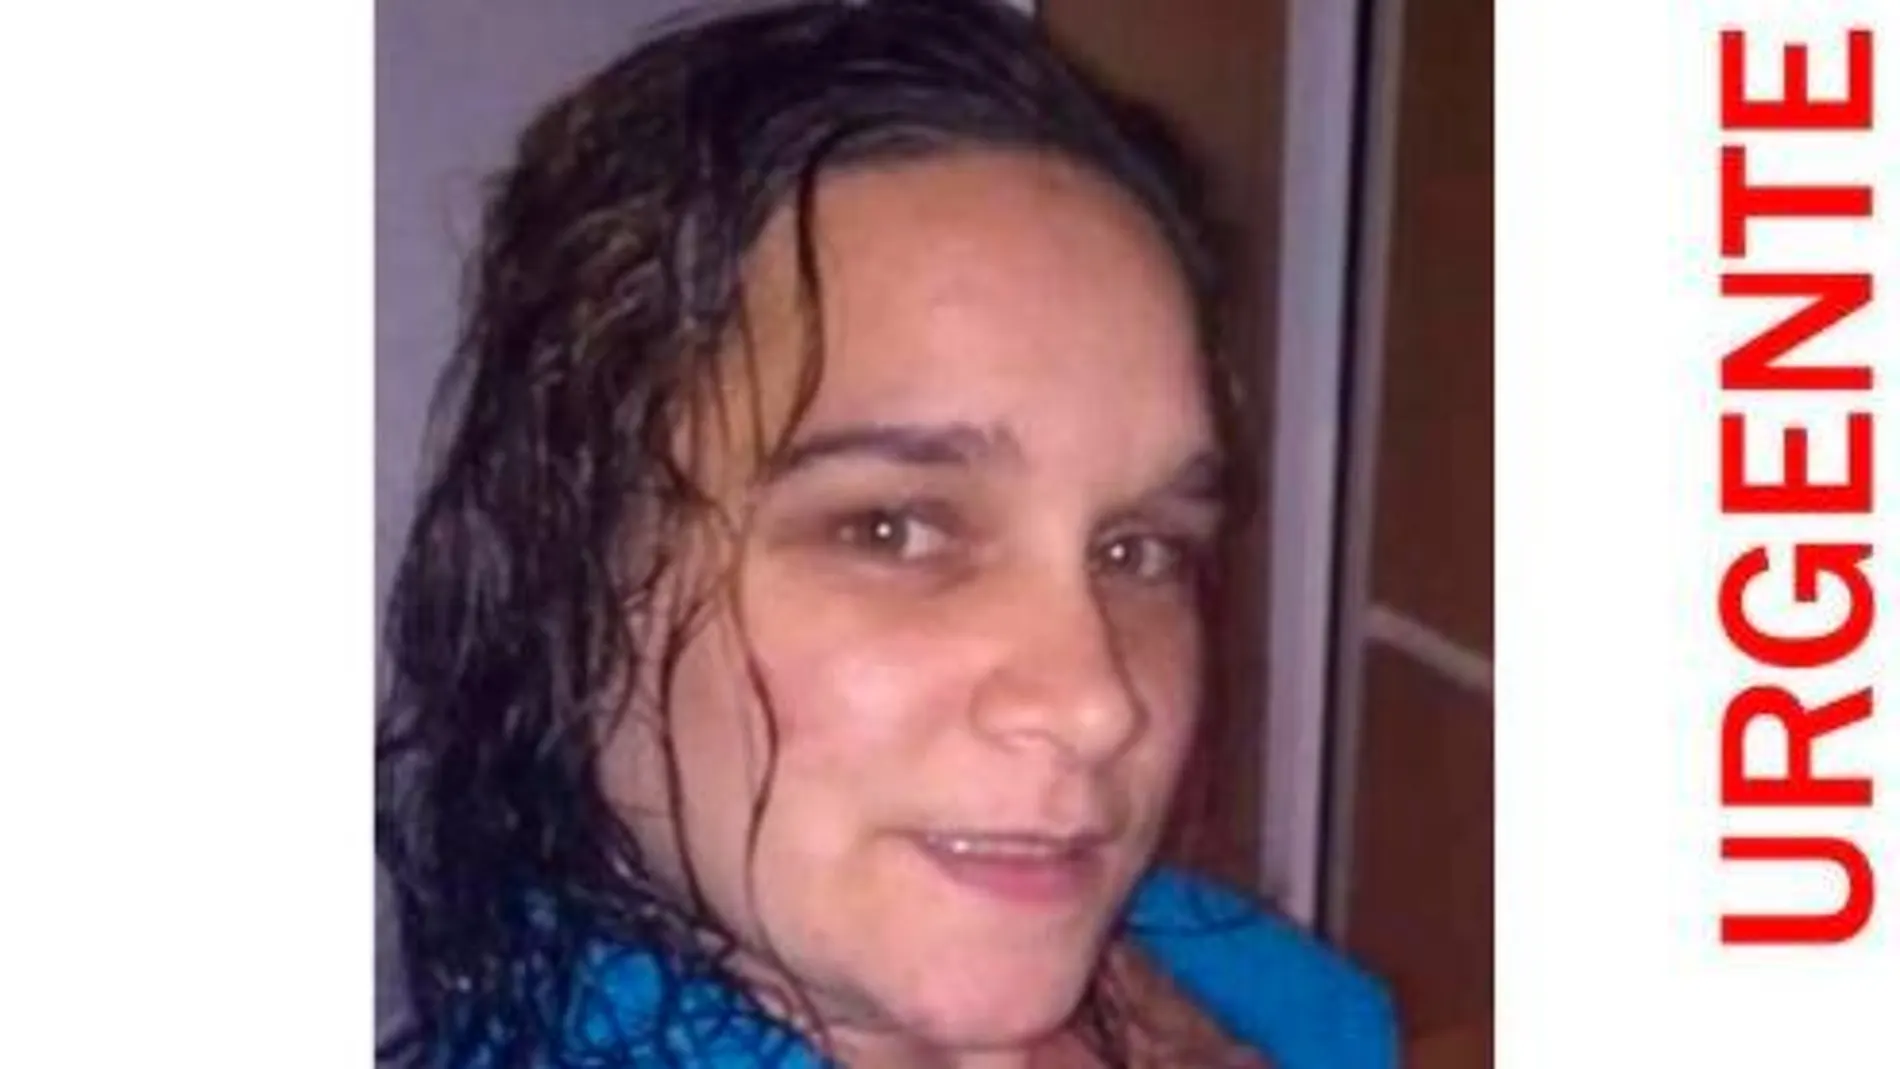 SOSDesaparecidos alertó de la desaparición de la mujer a través de su cuenta de Twitter